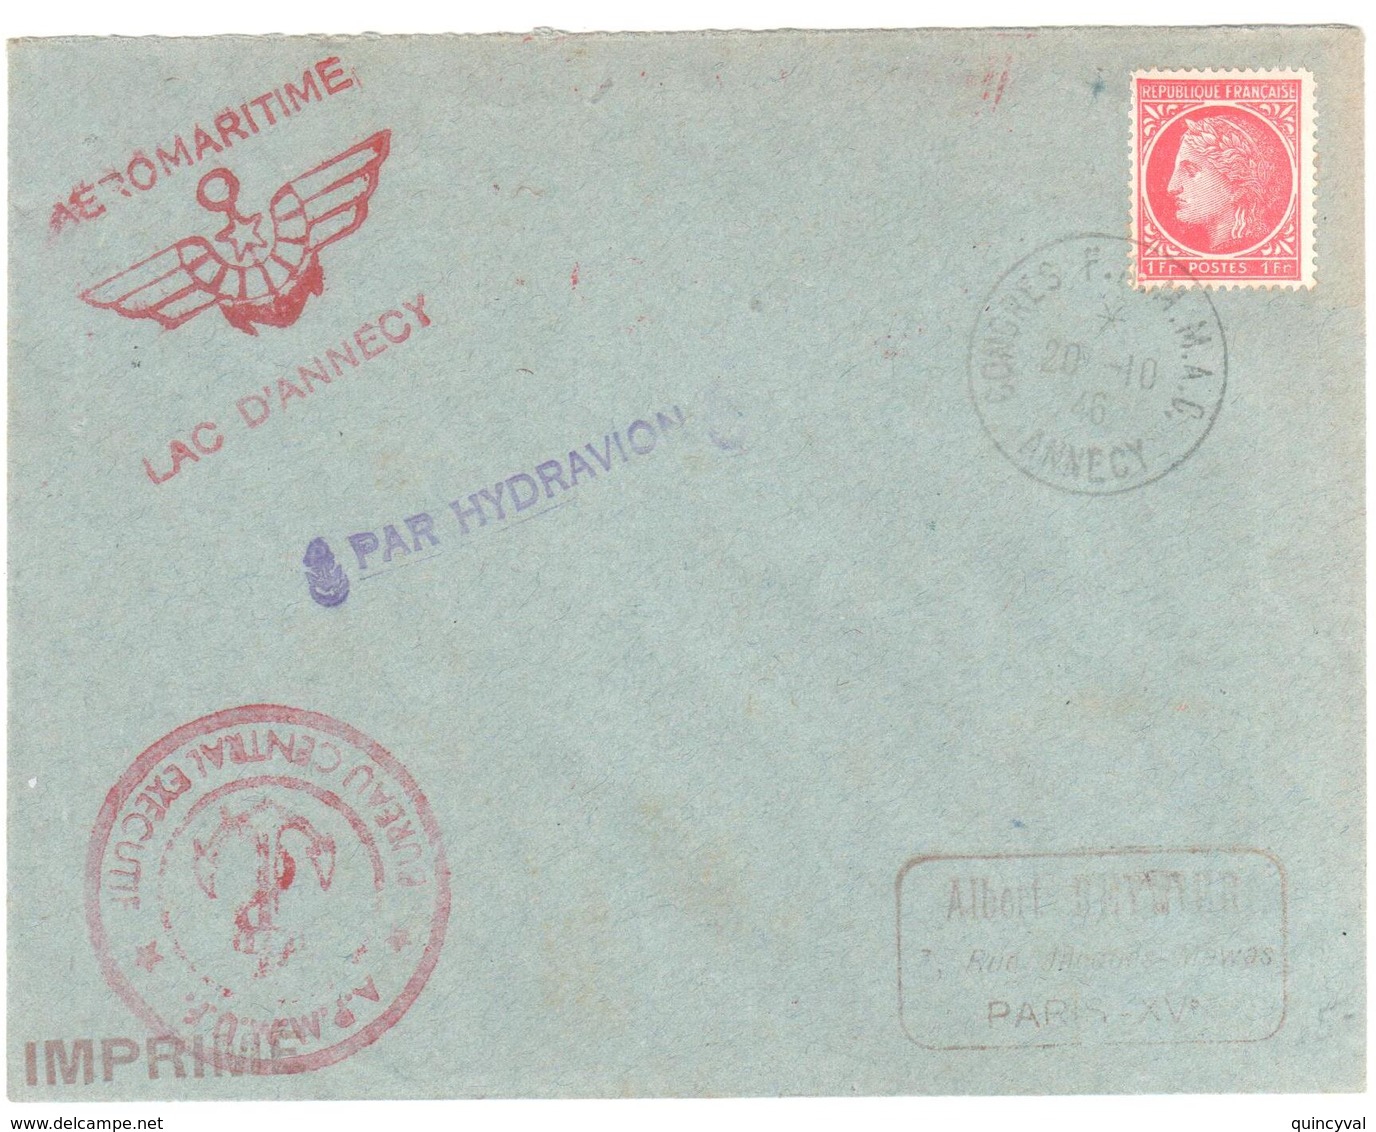 ANNECY Congrès F A M M A C 20 10 1946 Imprimé 1F Mazelin Yv 676 Marques AERO MARITIME Lac D'Annecy  PAR HYDRAVION - 1927-1959 Storia Postale